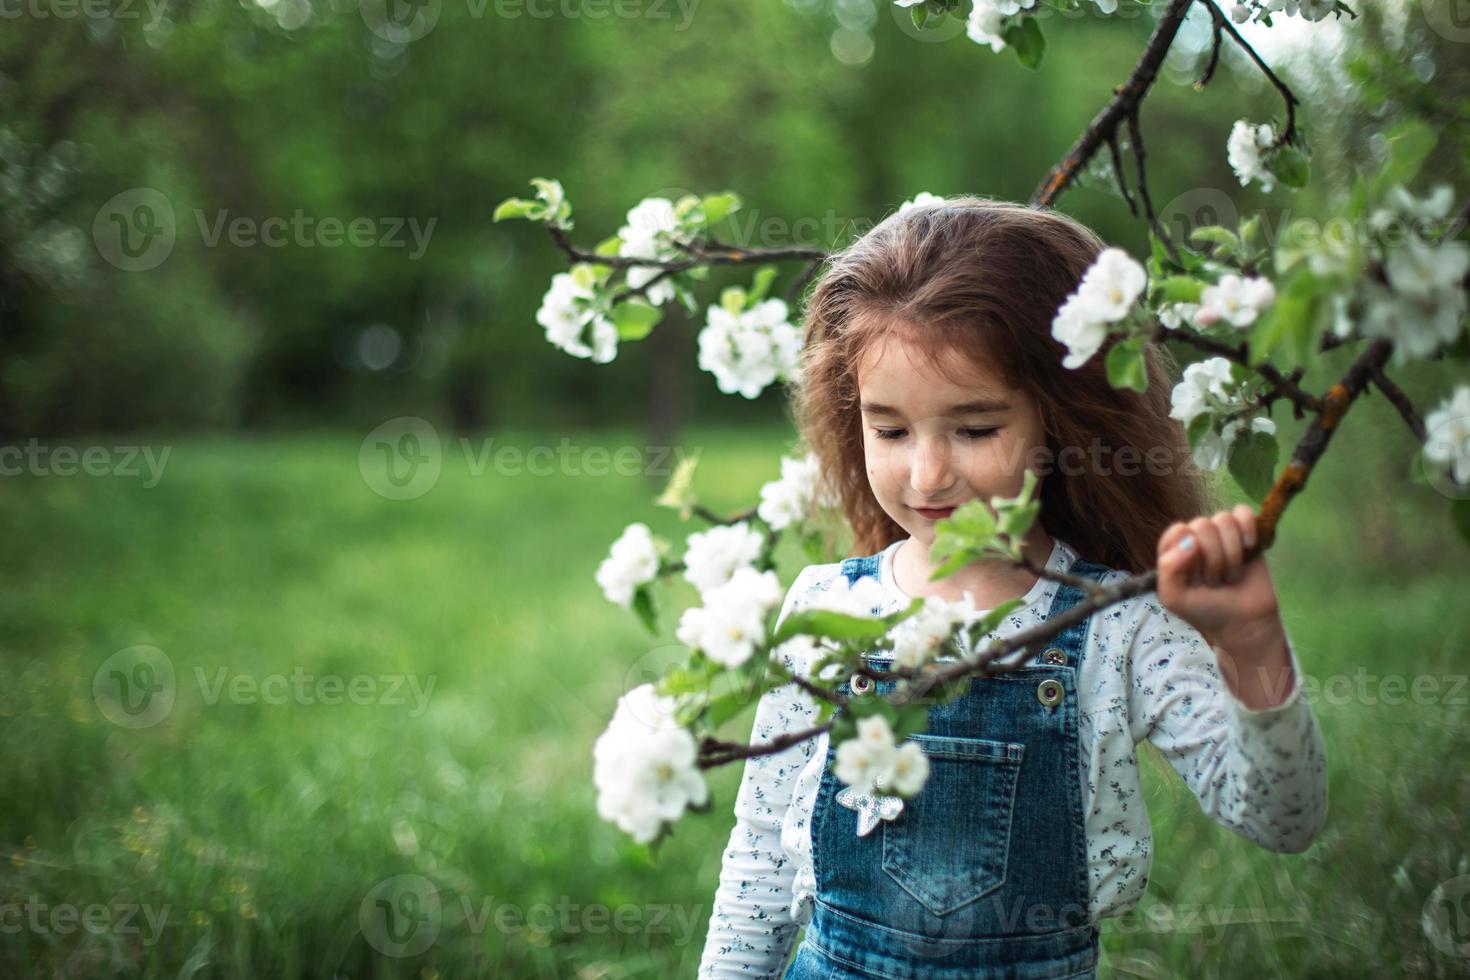 une jolie petite fille de 5 ans dans un verger de pommiers blancs en fleurs au printemps. printemps, verger, floraison, allergie, parfum printanier, tendresse, soin de la nature. portrait photo